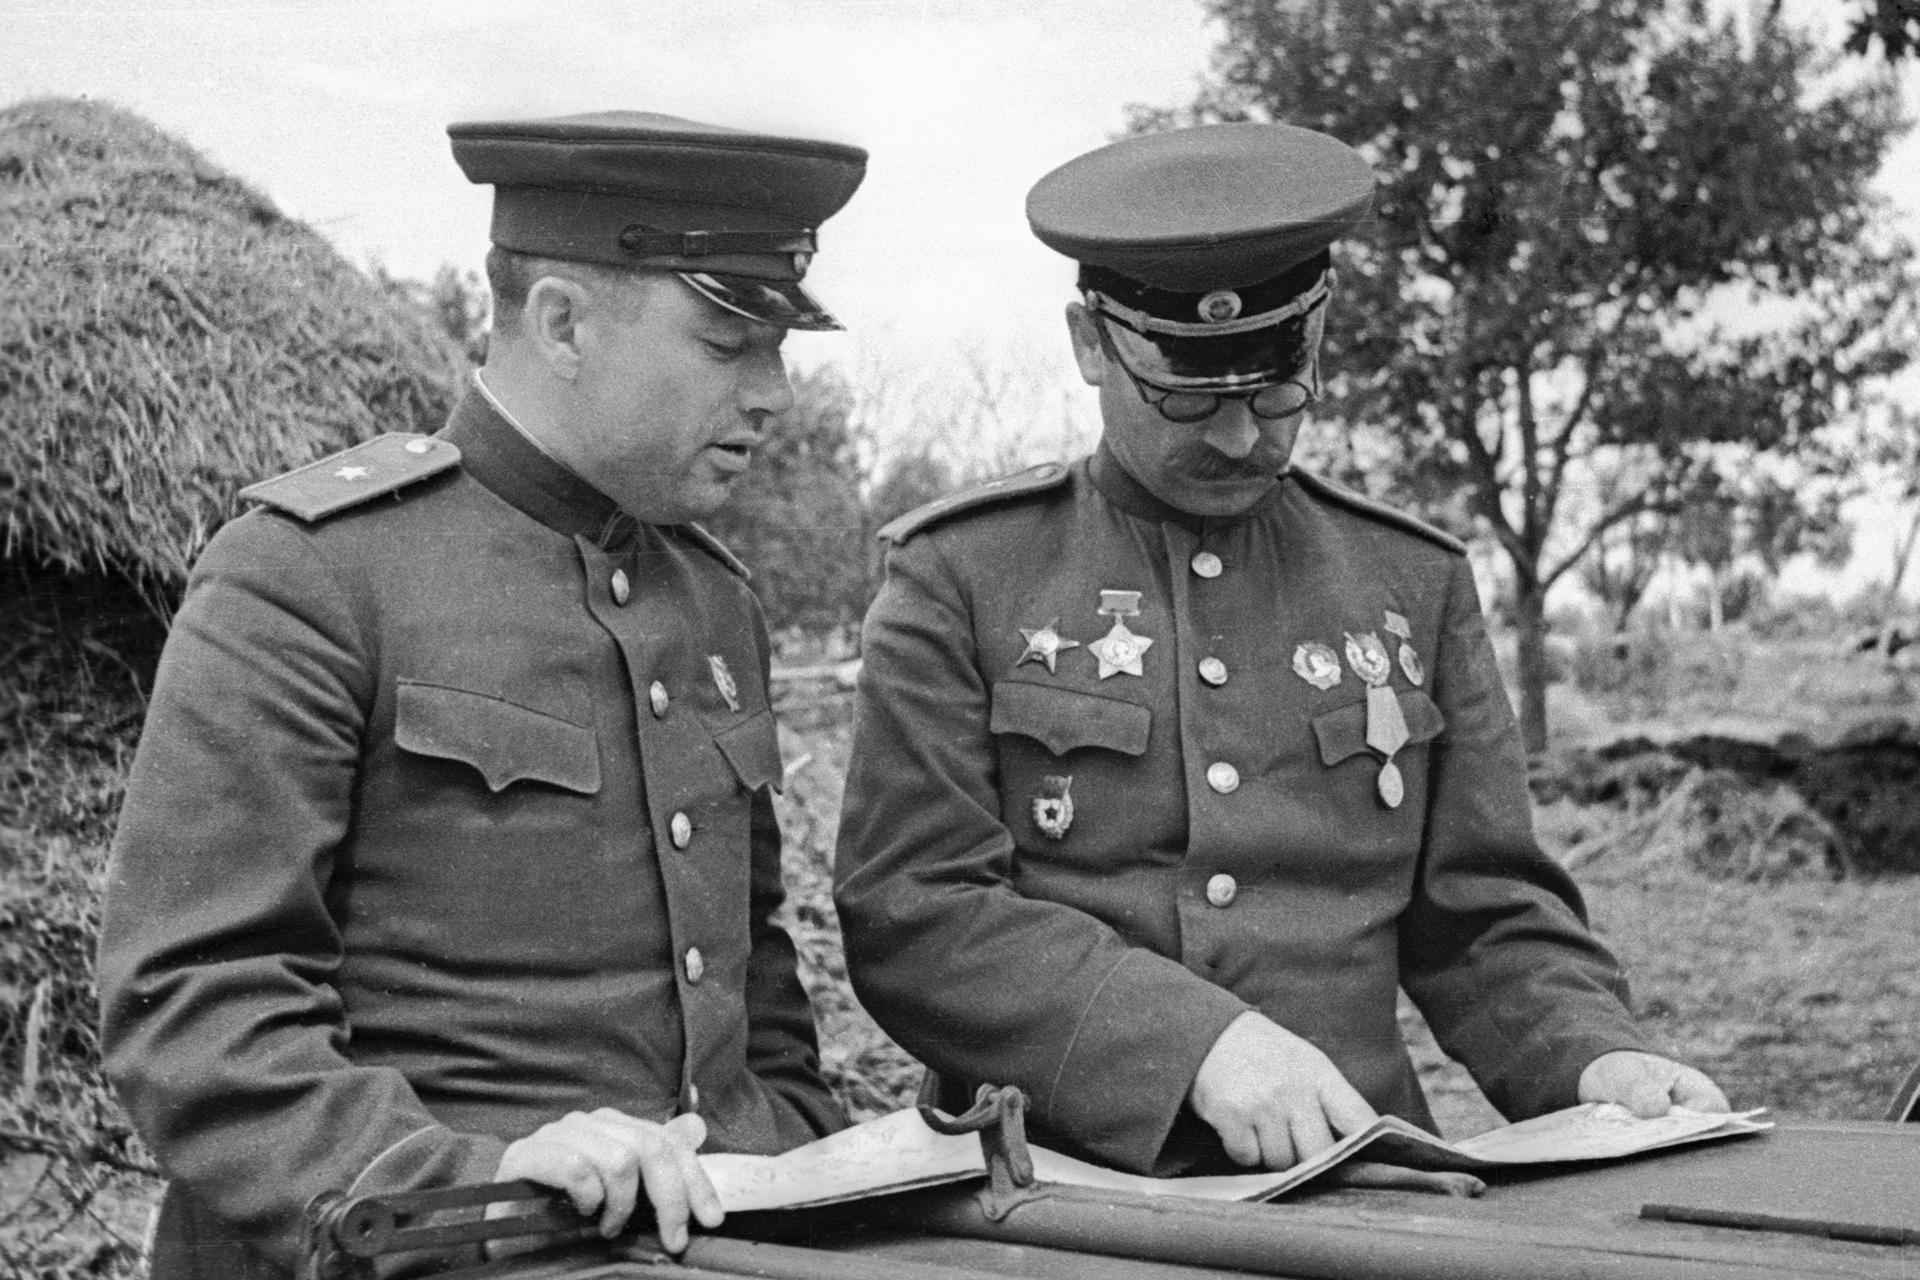 Генералы великой отечественной войны 1941 1945 фото и описание